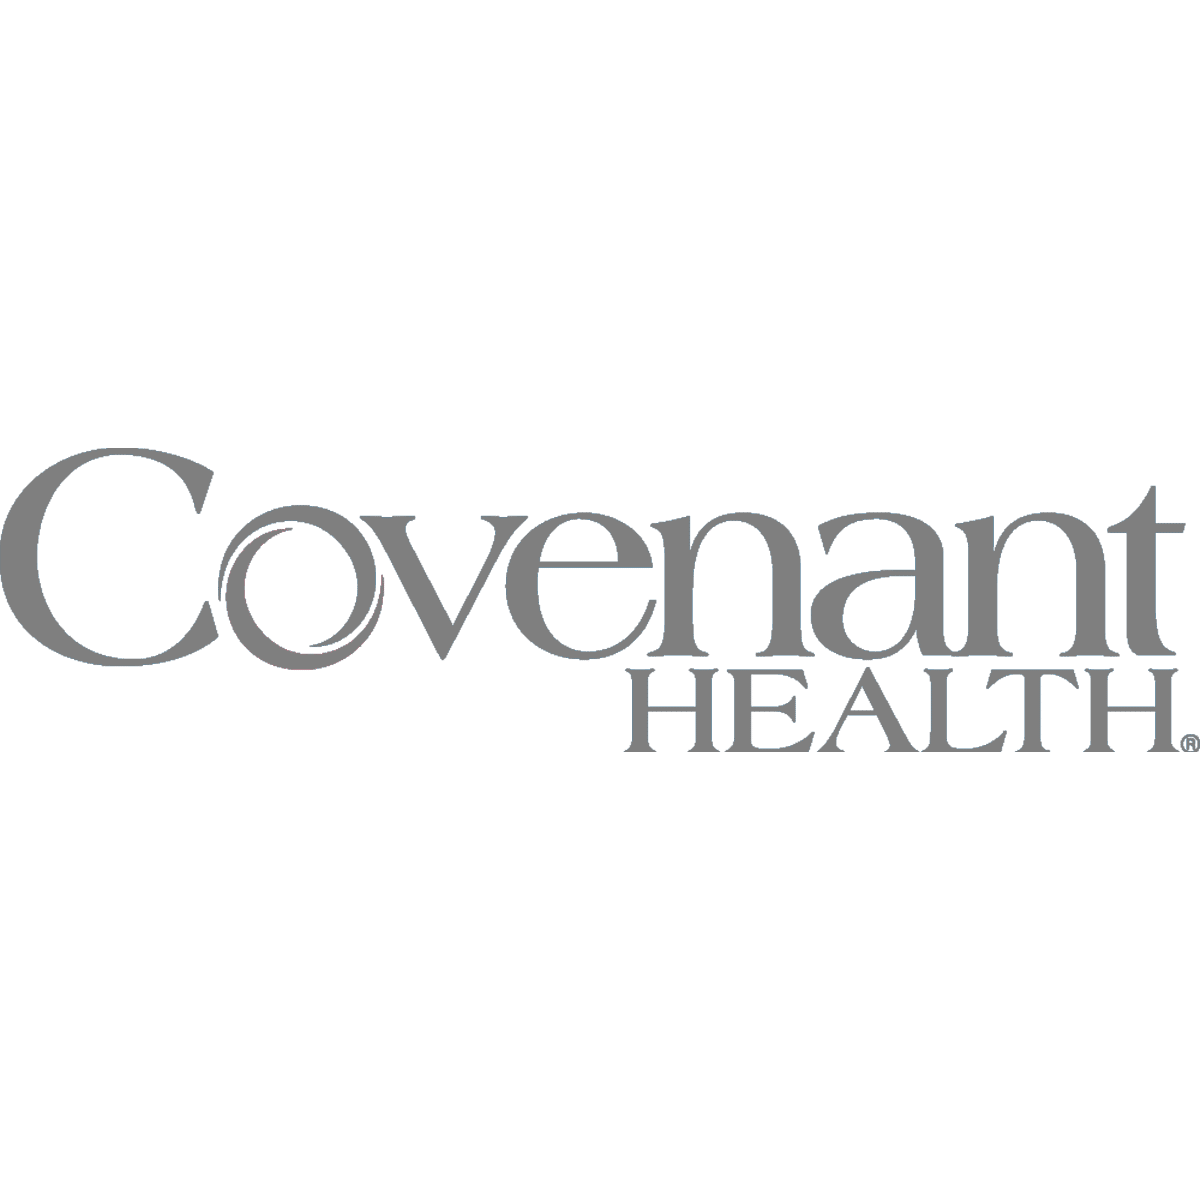 Client-Logos-Covenant